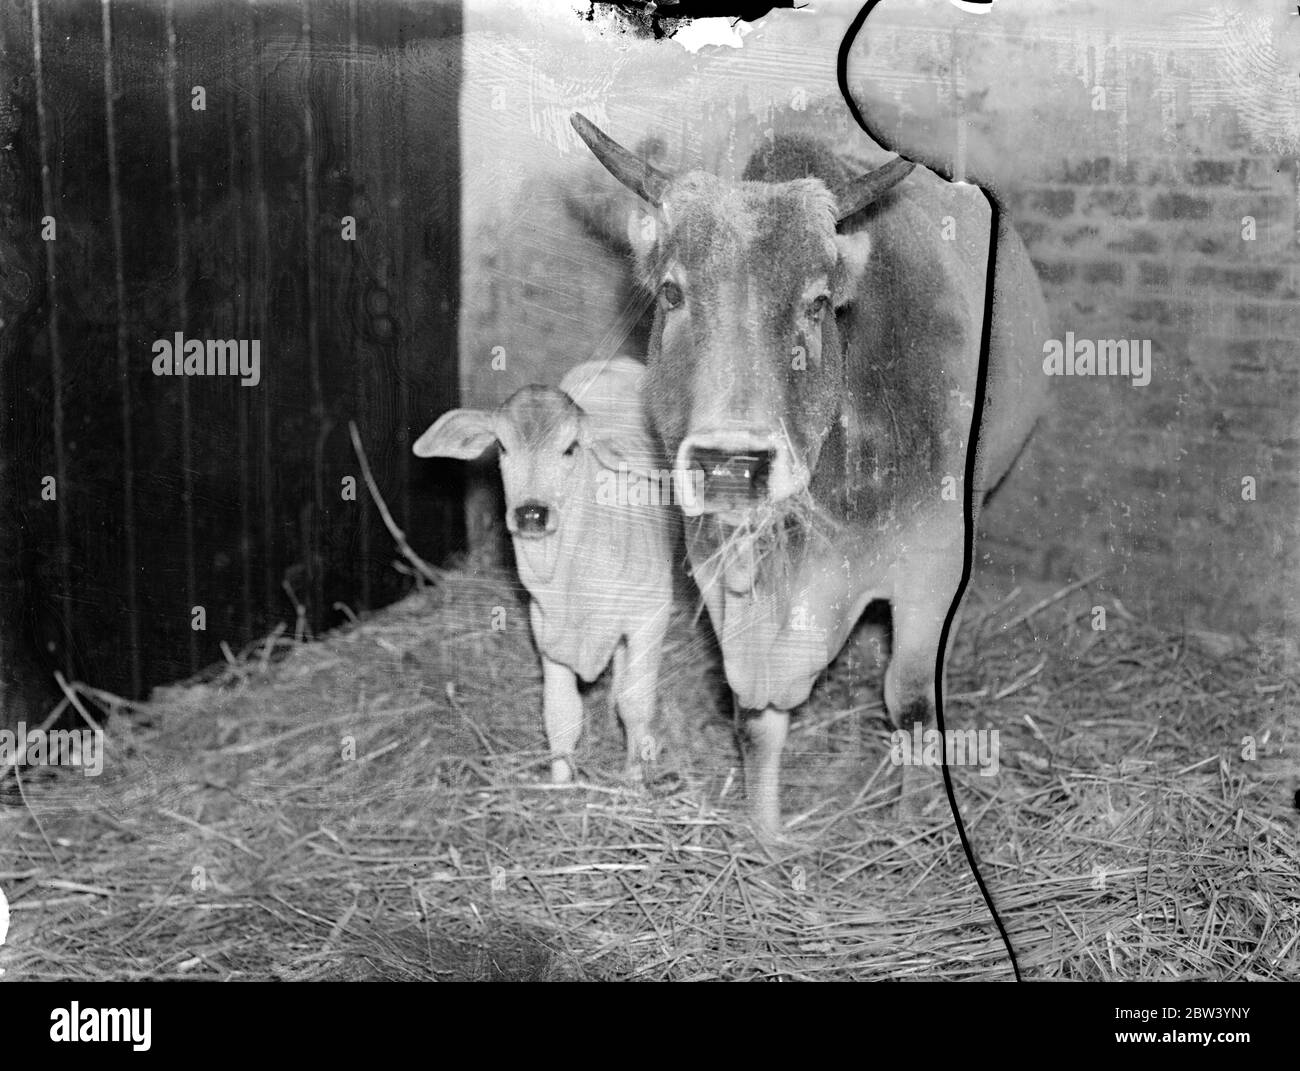 La vacca sacra dello zoo ha un vitello. Un vitello nato a Gladdy, il Gujerat Zebu, è l'ultima aggiunta allo Zoo di Londra. Sei settimane, il bambino è stato chiamato Bonny. Lo zebu, una specie di buoi con una grande gobba sulle spalle di un colore grigio chiaro, è considerato sacro in alcune parti dell'India. Spettacoli fotografici: Bonny, il vitello, con la madre, Gladdy, allo Zoo di Londra. 18 gennaio 1937 Foto Stock